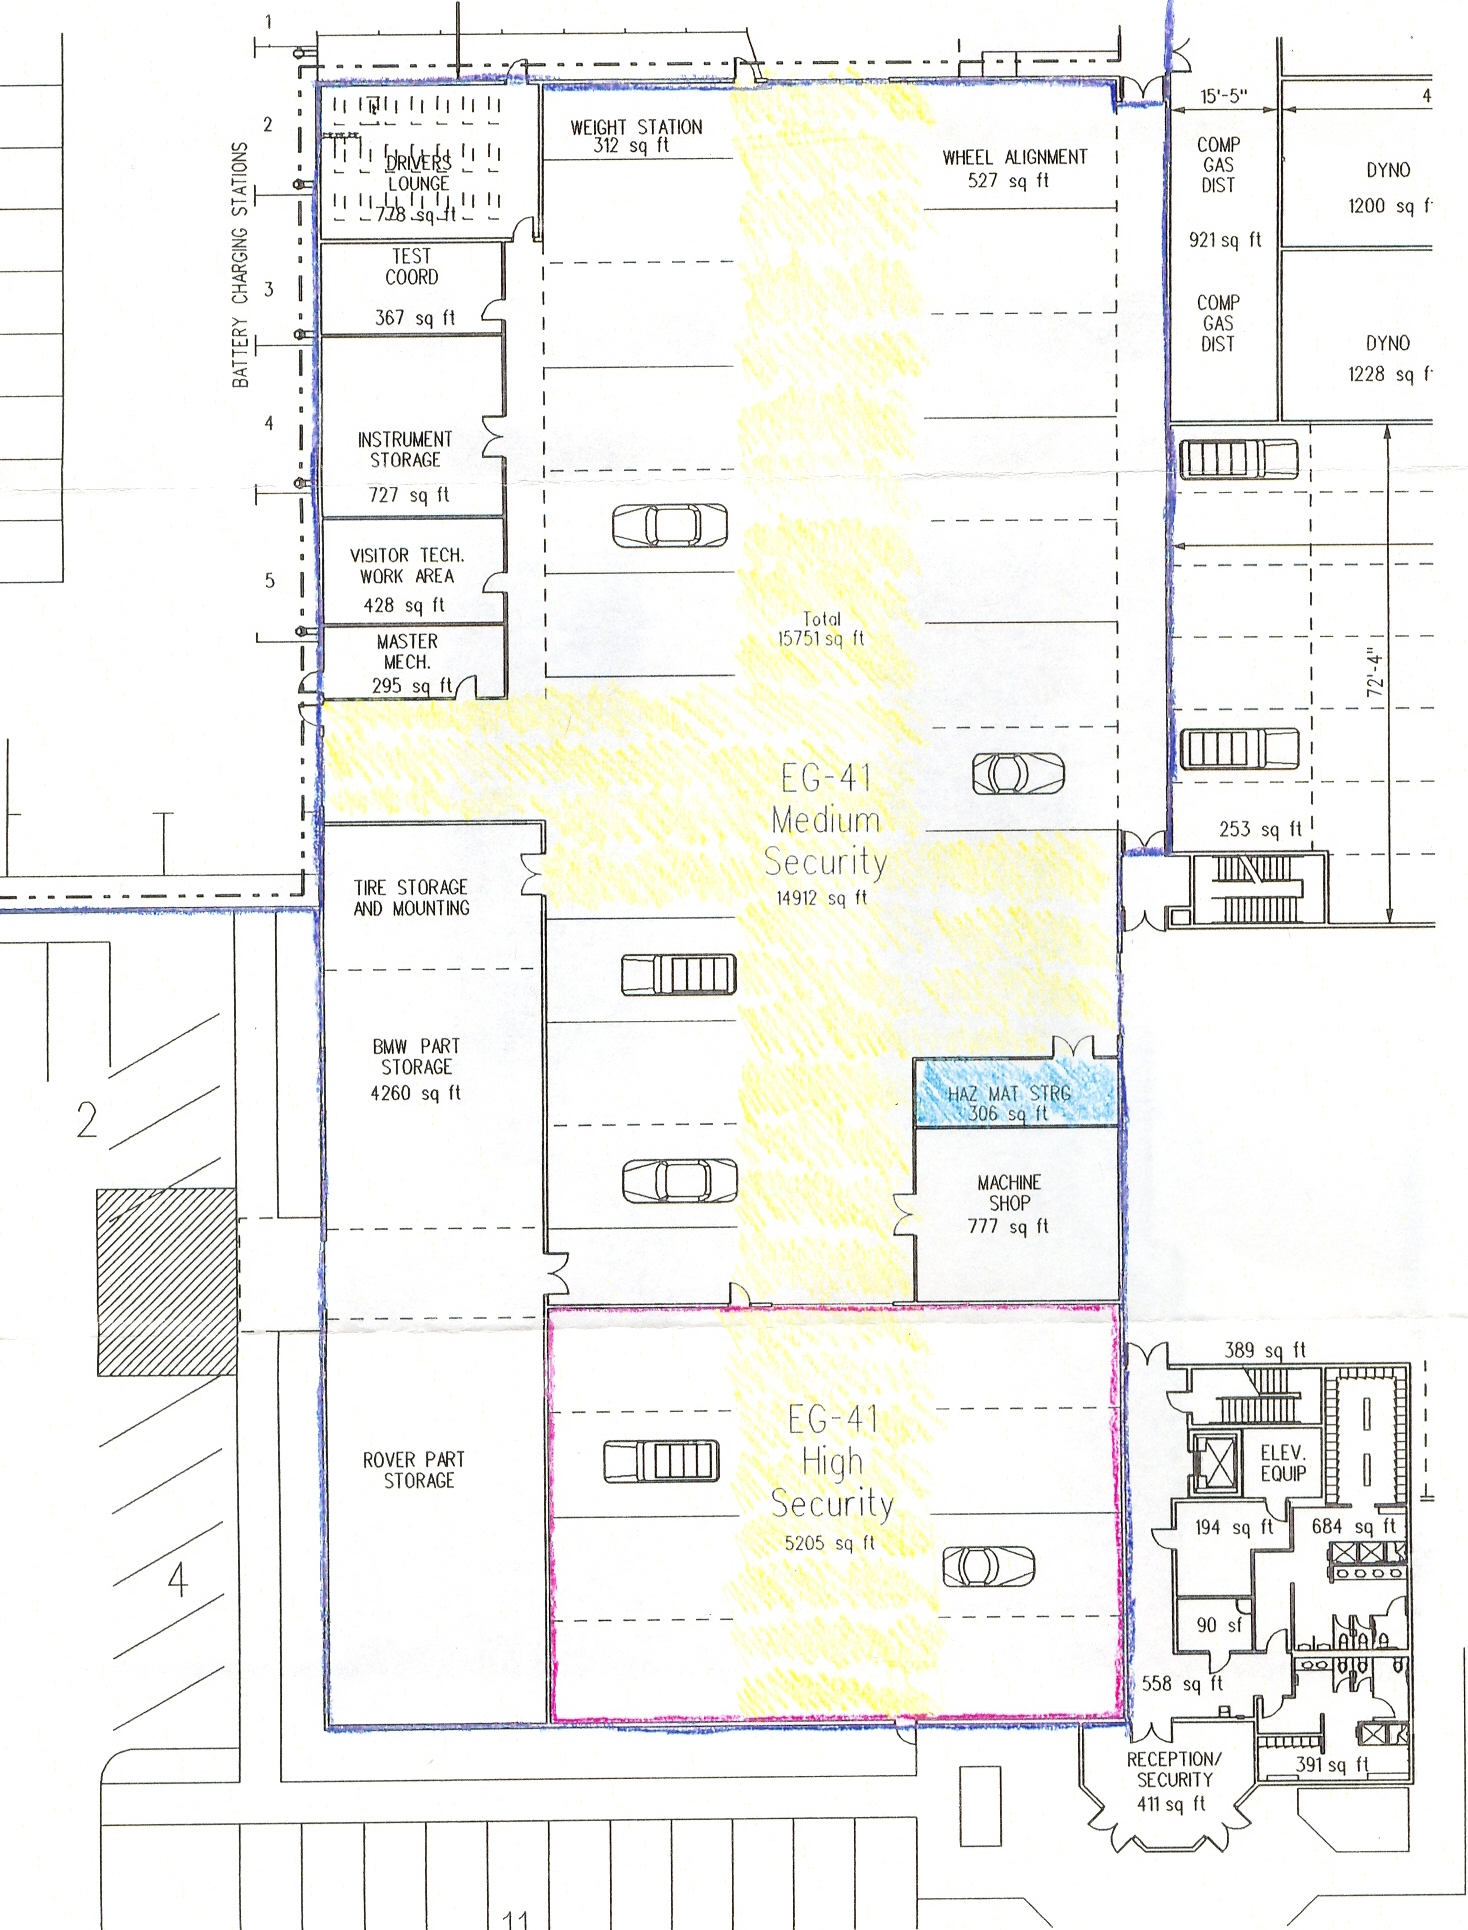 Enlarged Floor Plan Engineering Ctr.jpg